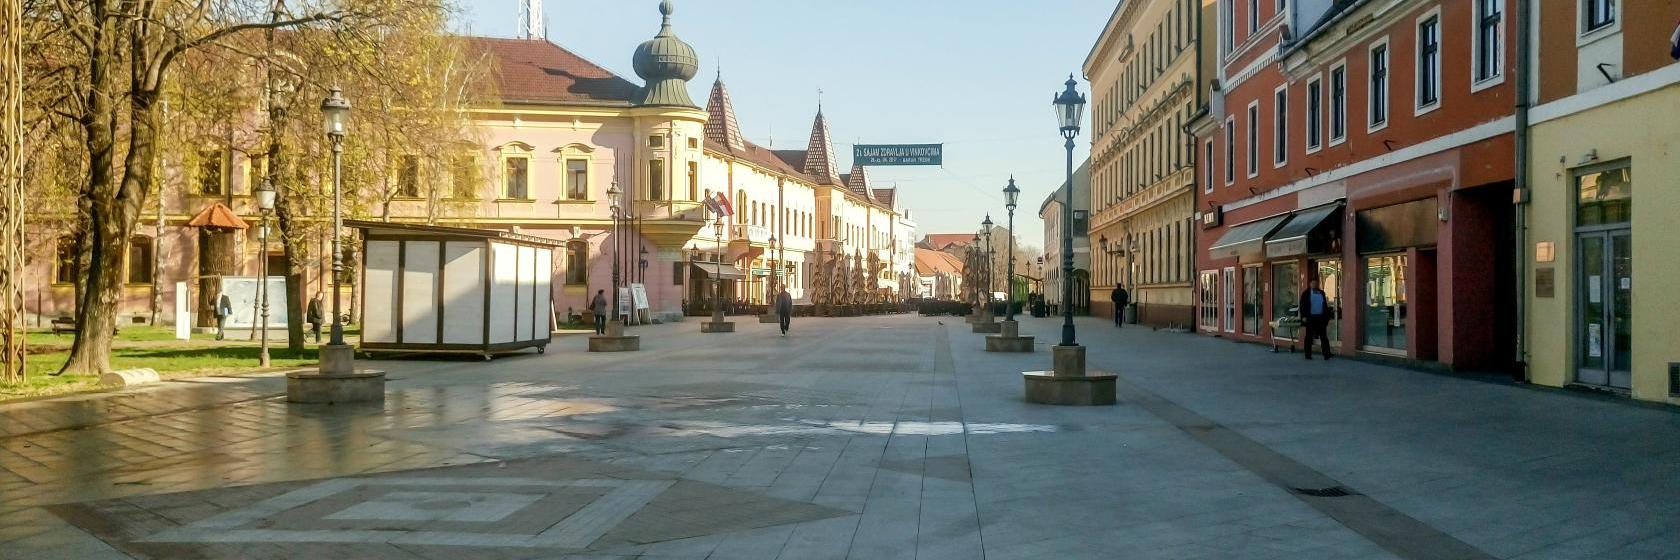 Aplikacija za upoznavanje grad Vinkovci Hrvatska